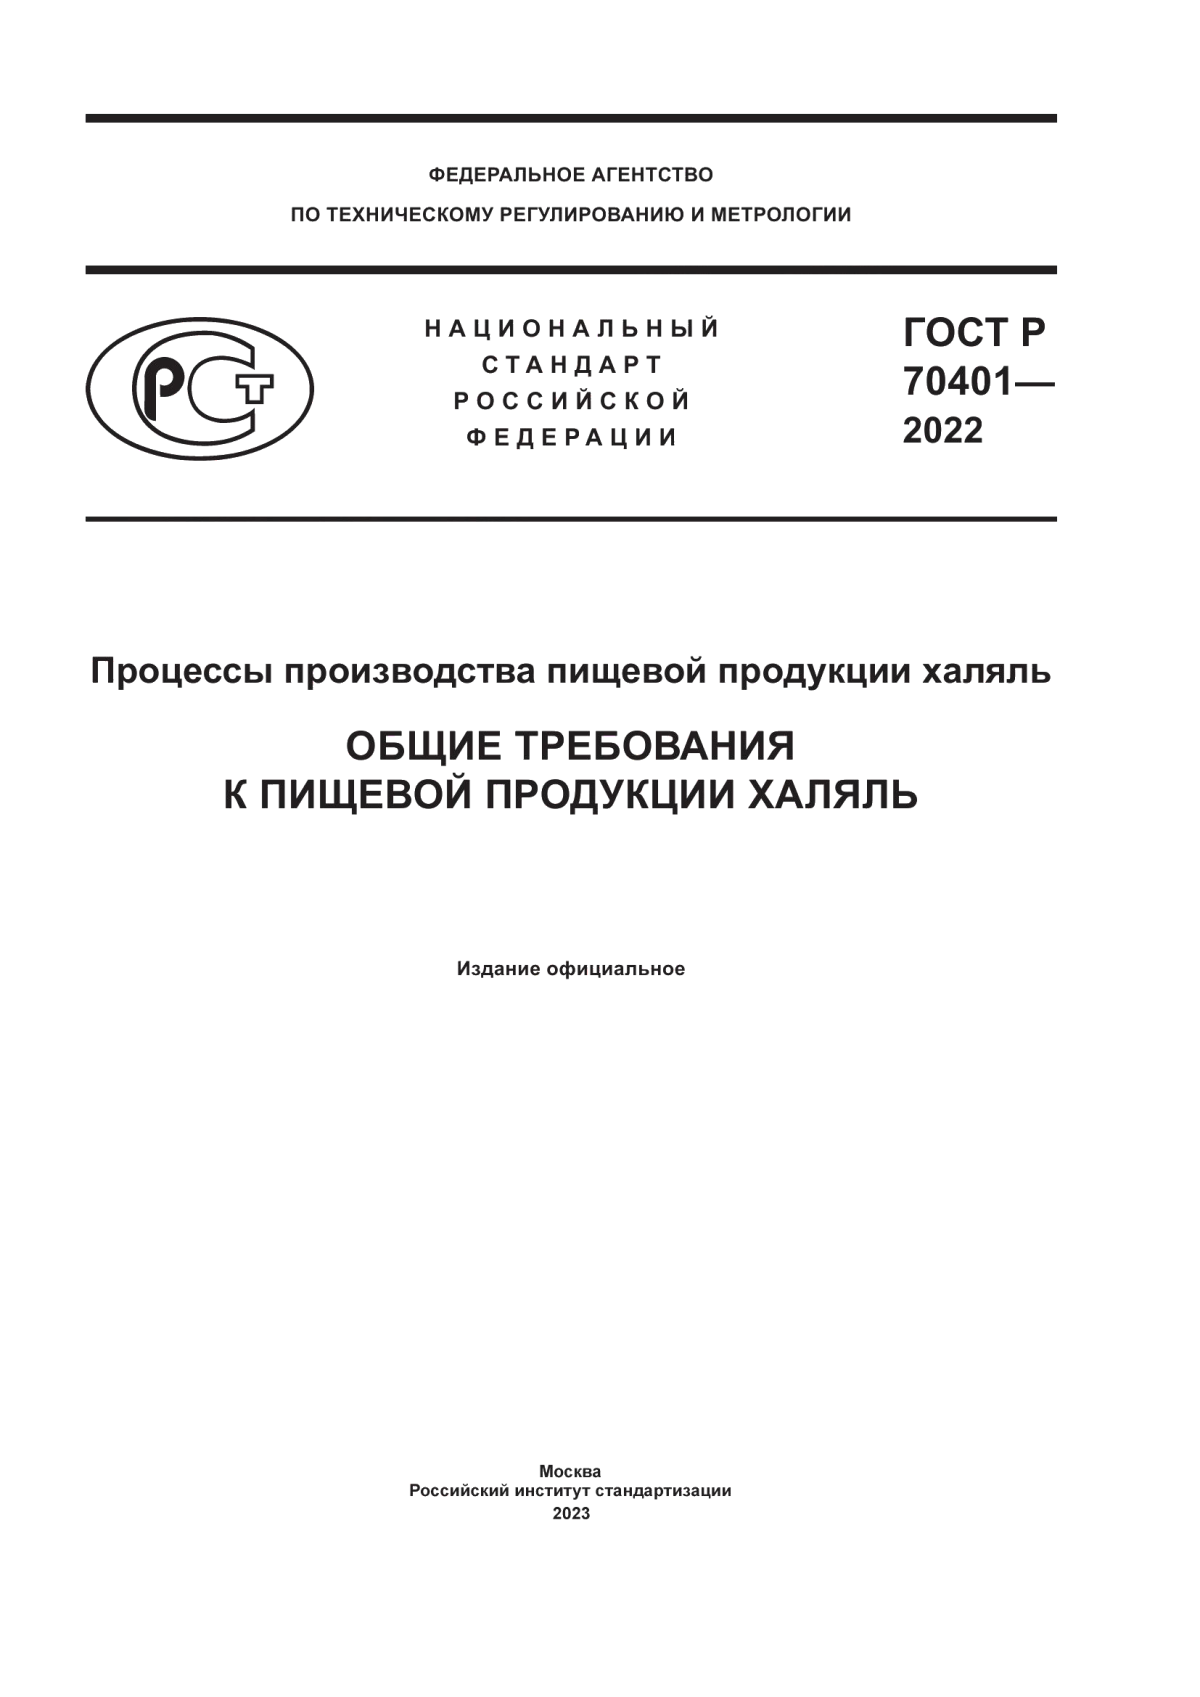 ГОСТ Р 70401-2022 Процессы производства пищевой продукции халяль. Общие требования к пищевой продукции халяль